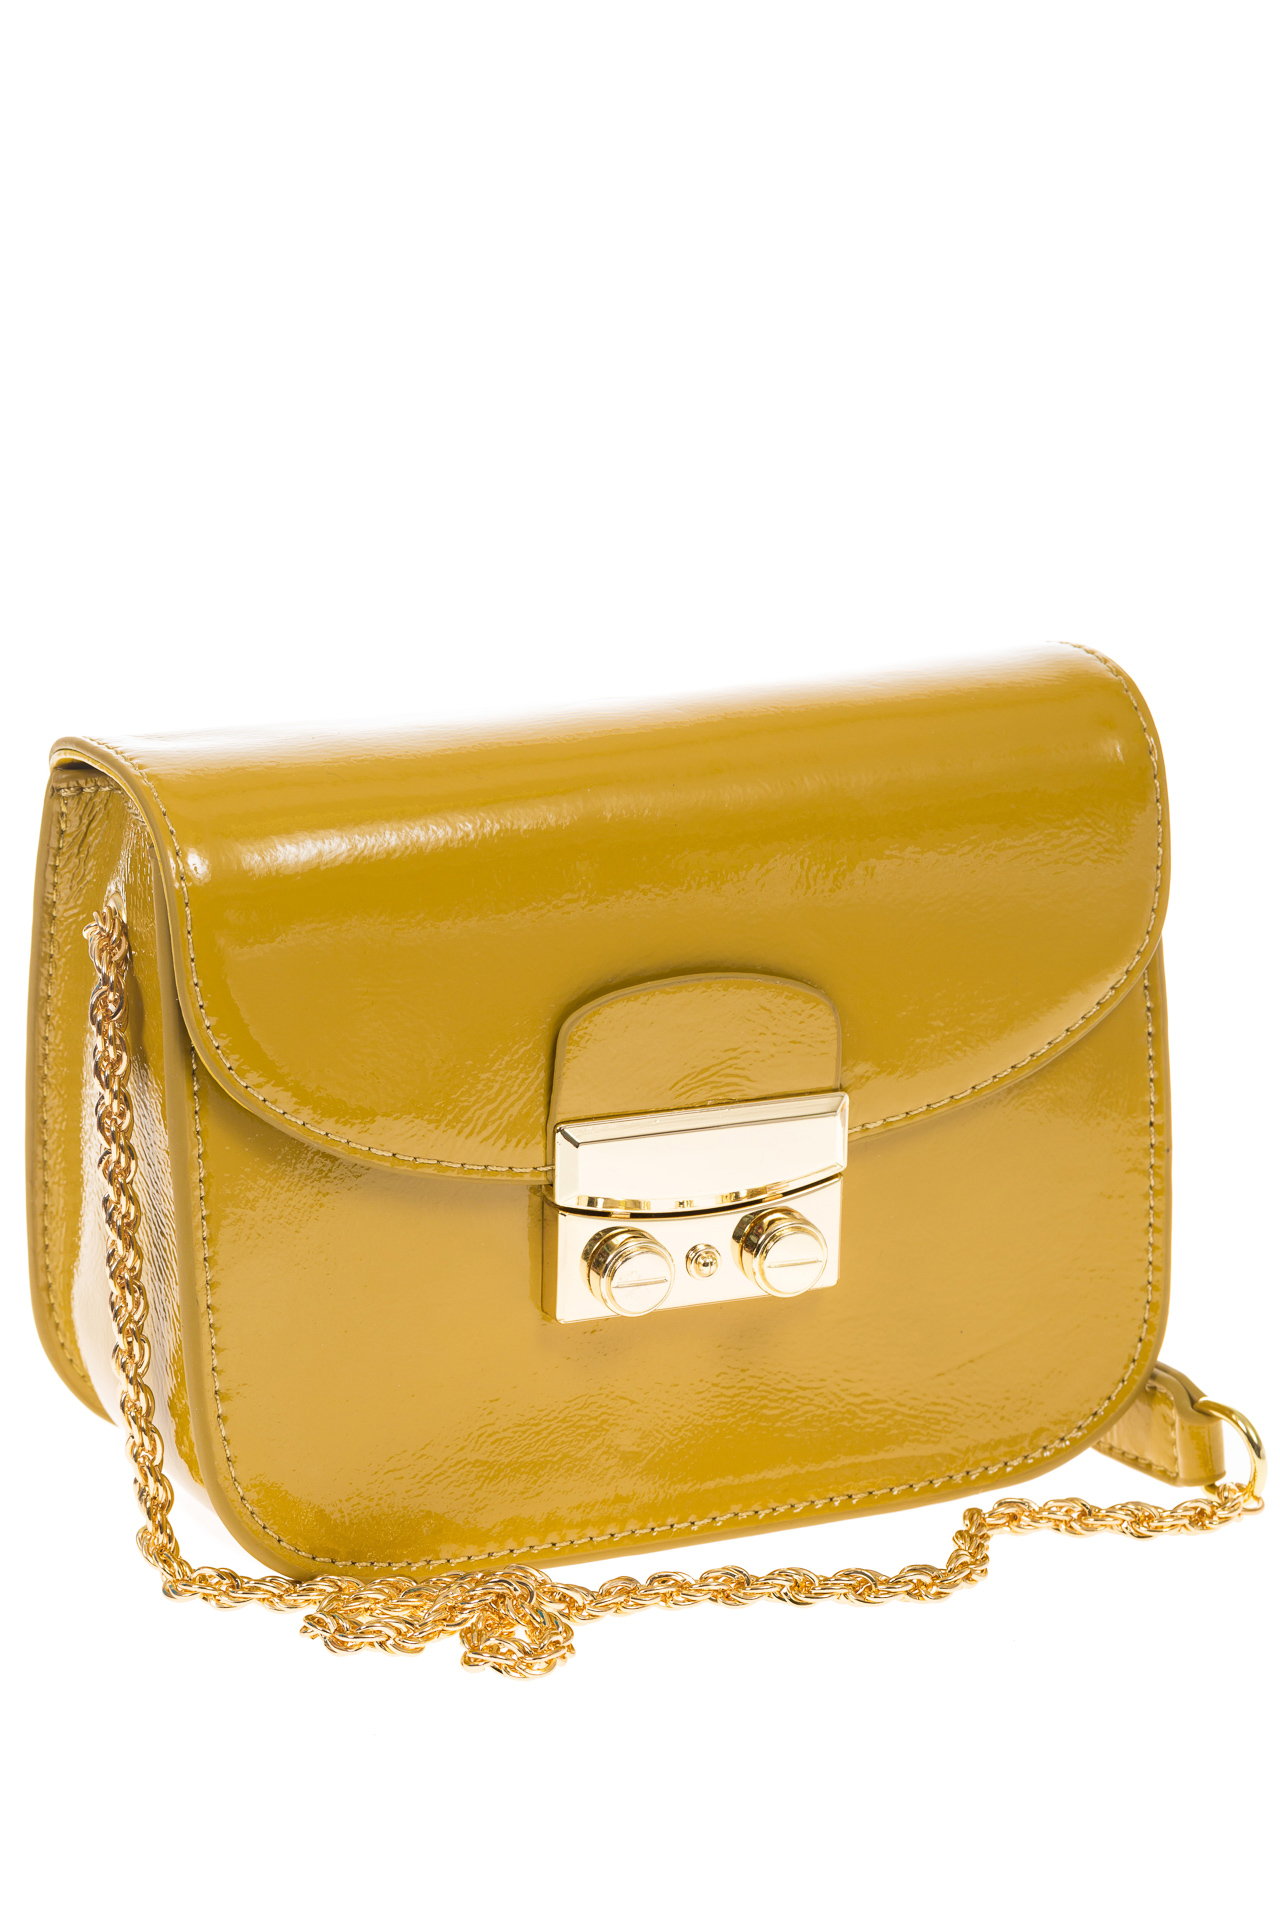 Желтая наплечная сумка с лаковым эффектом 8051 на фото